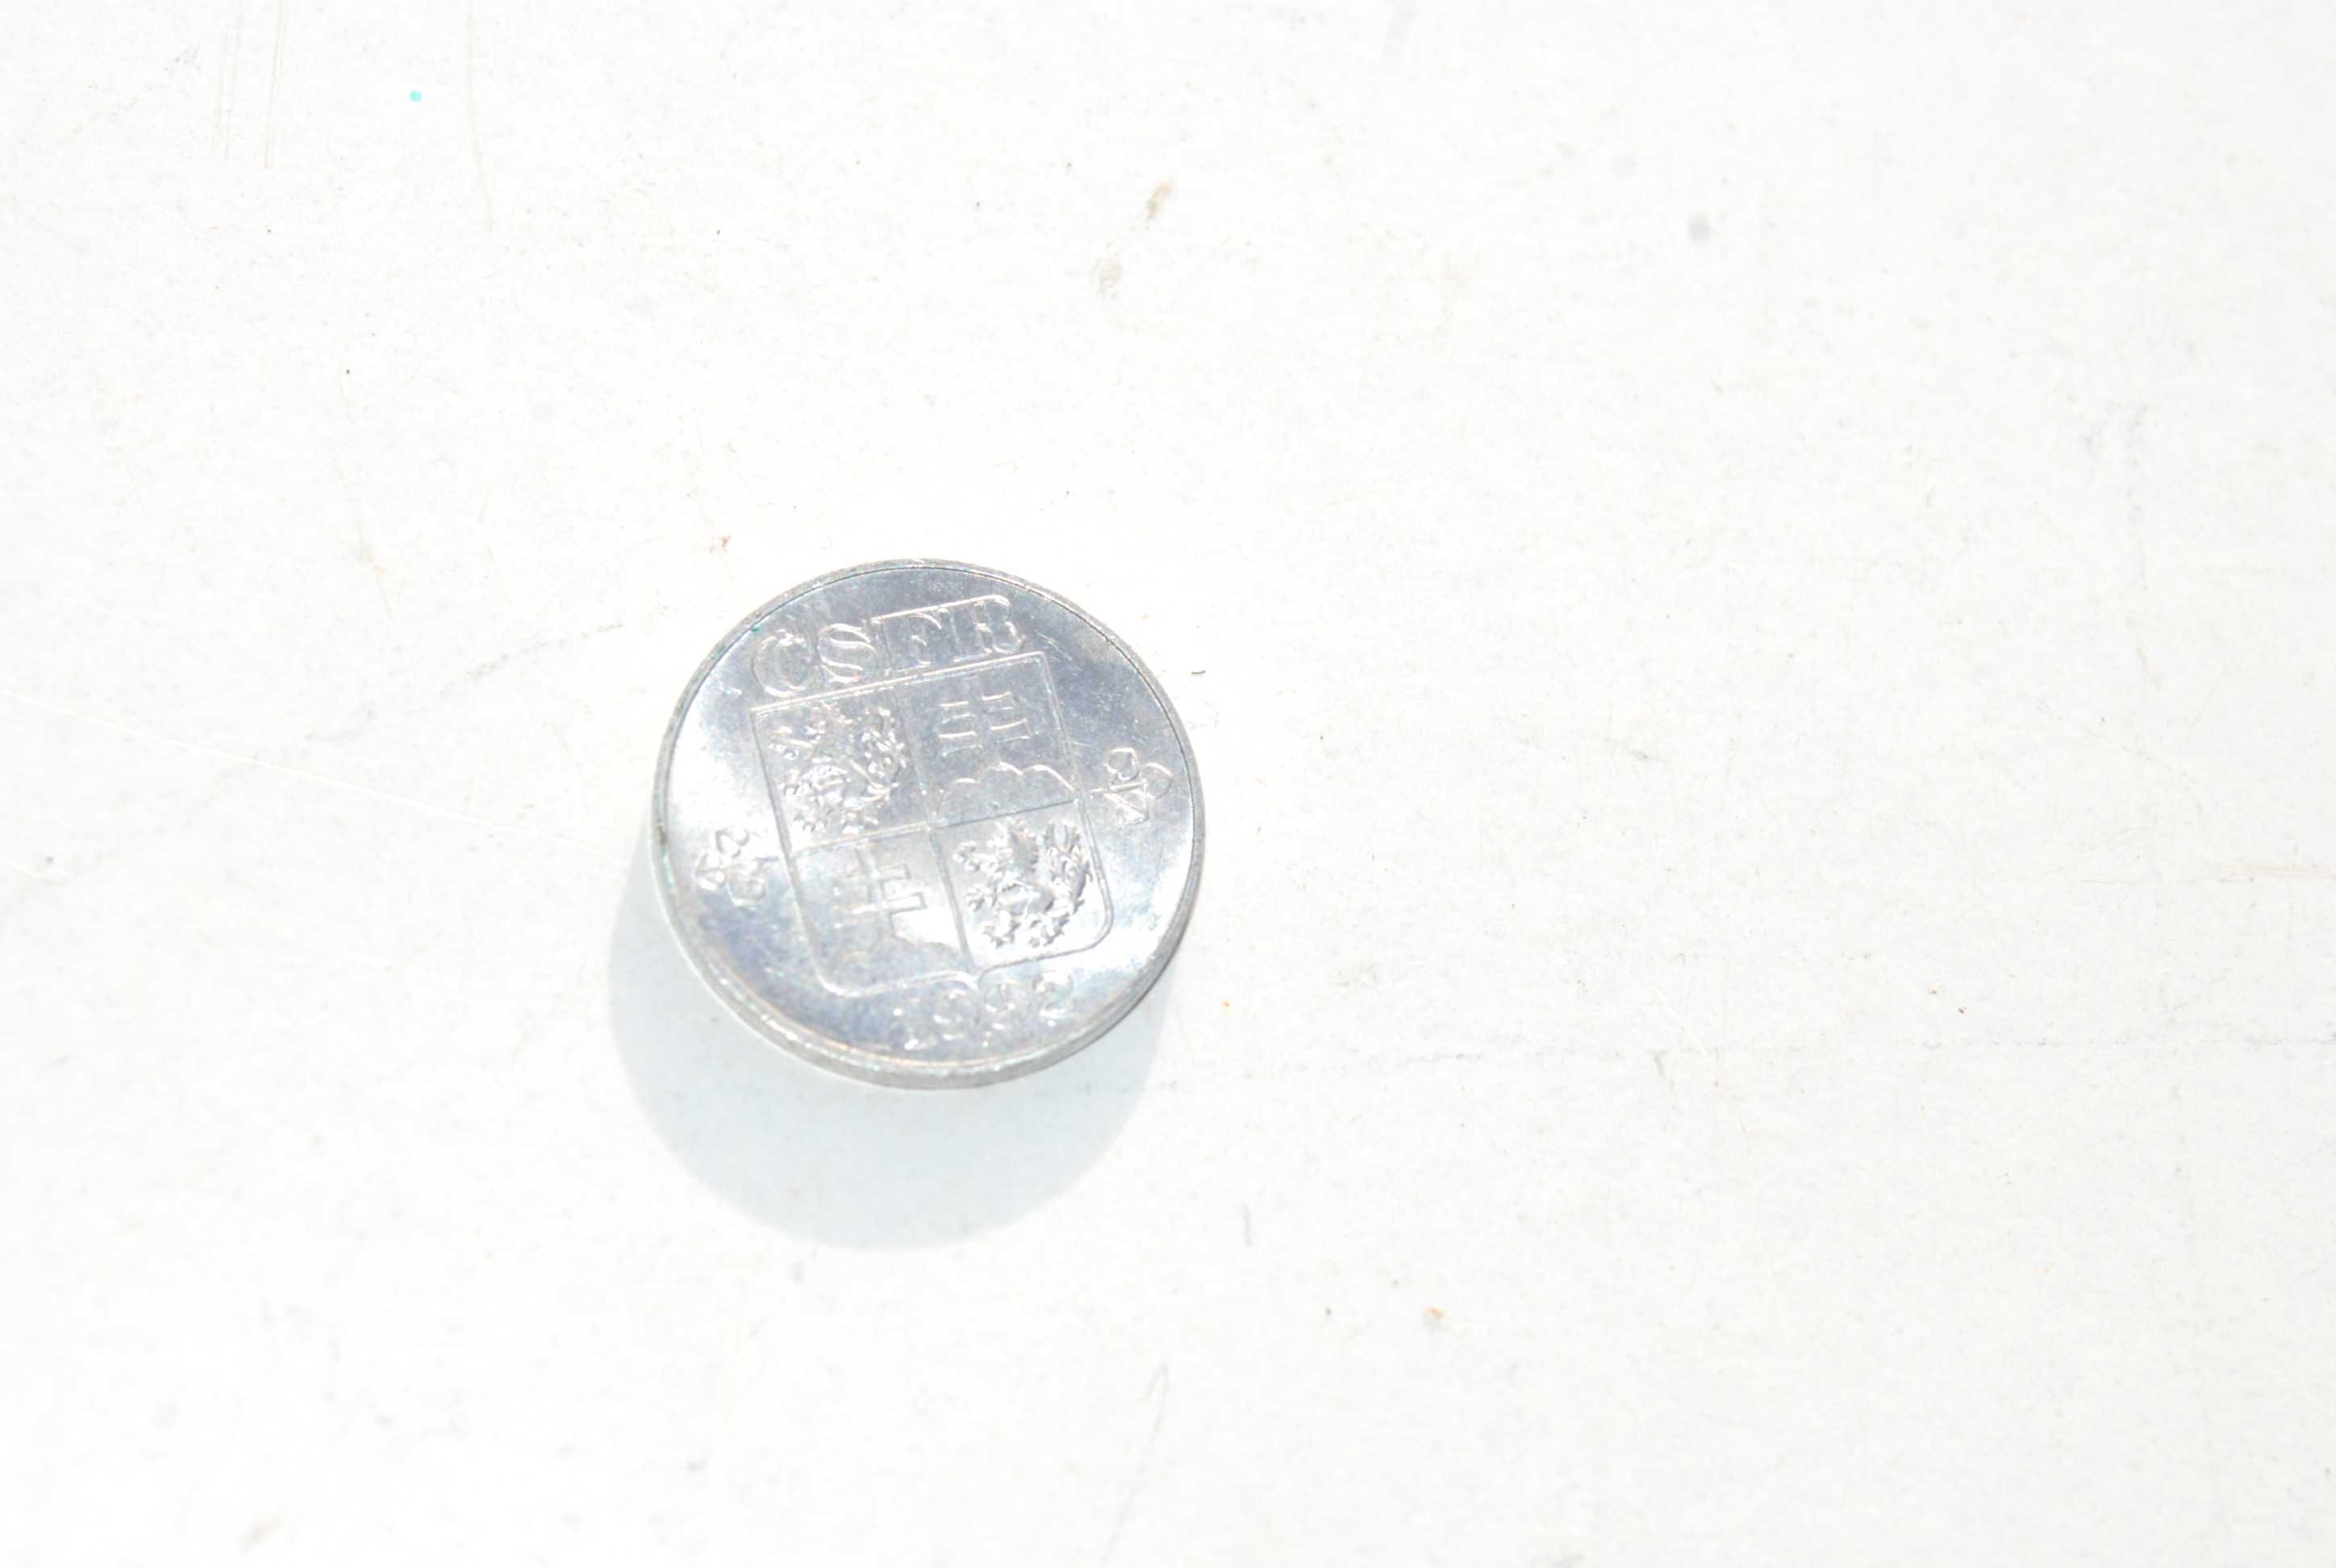 Stara moneta 10 halerzy Czechosłowacja 1992 unikat antyk